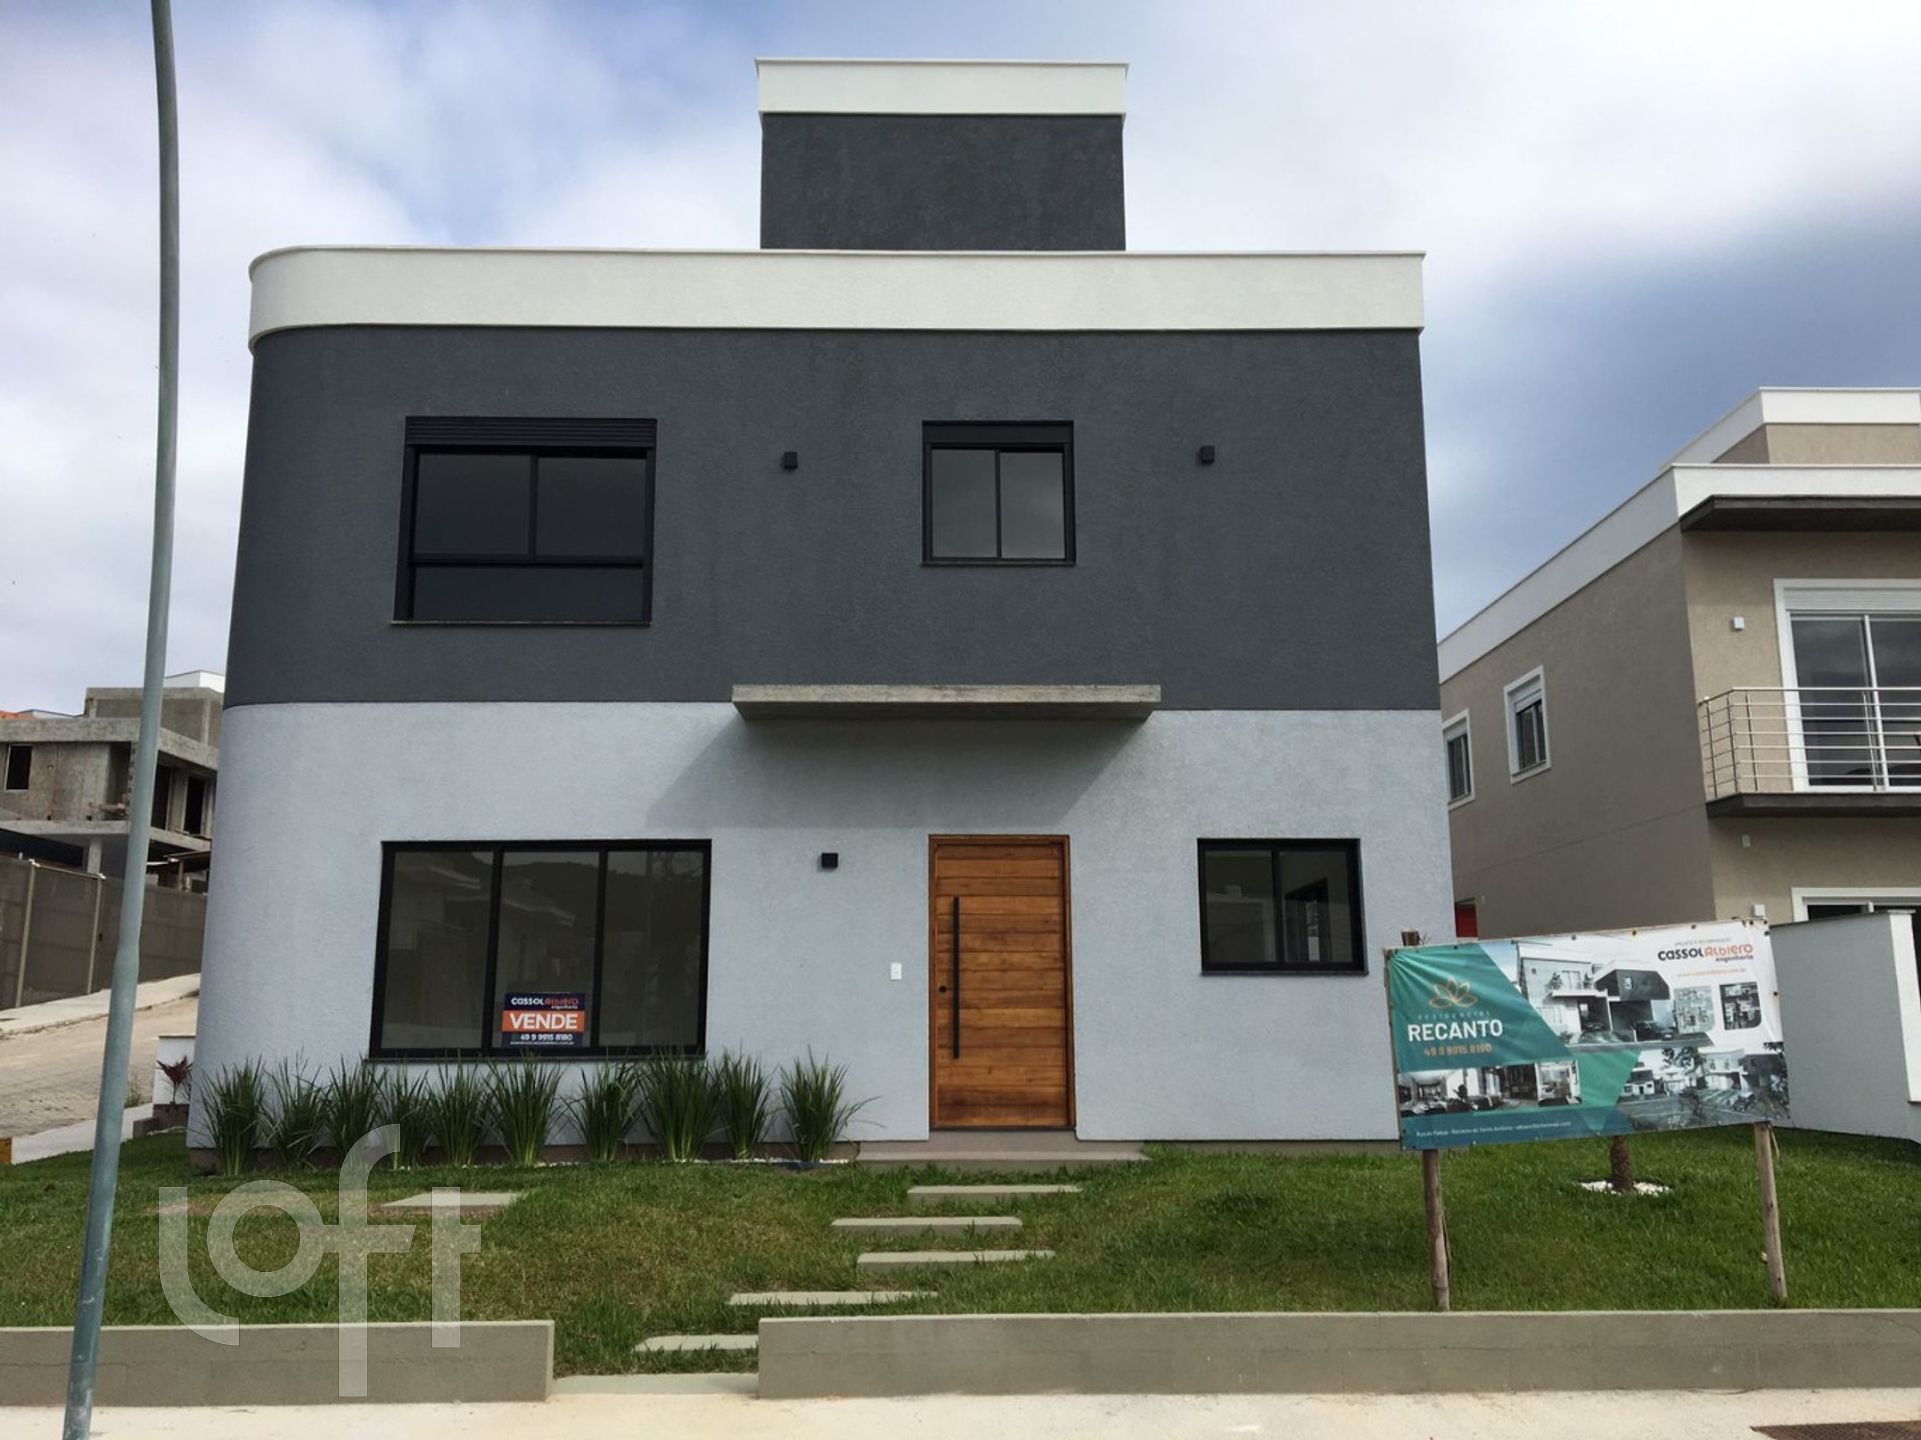 VENDA &#8211; Casa de 1 quarto no bairro Recanto dos Açores, Florianópolis &#8211; PU4uxv4l